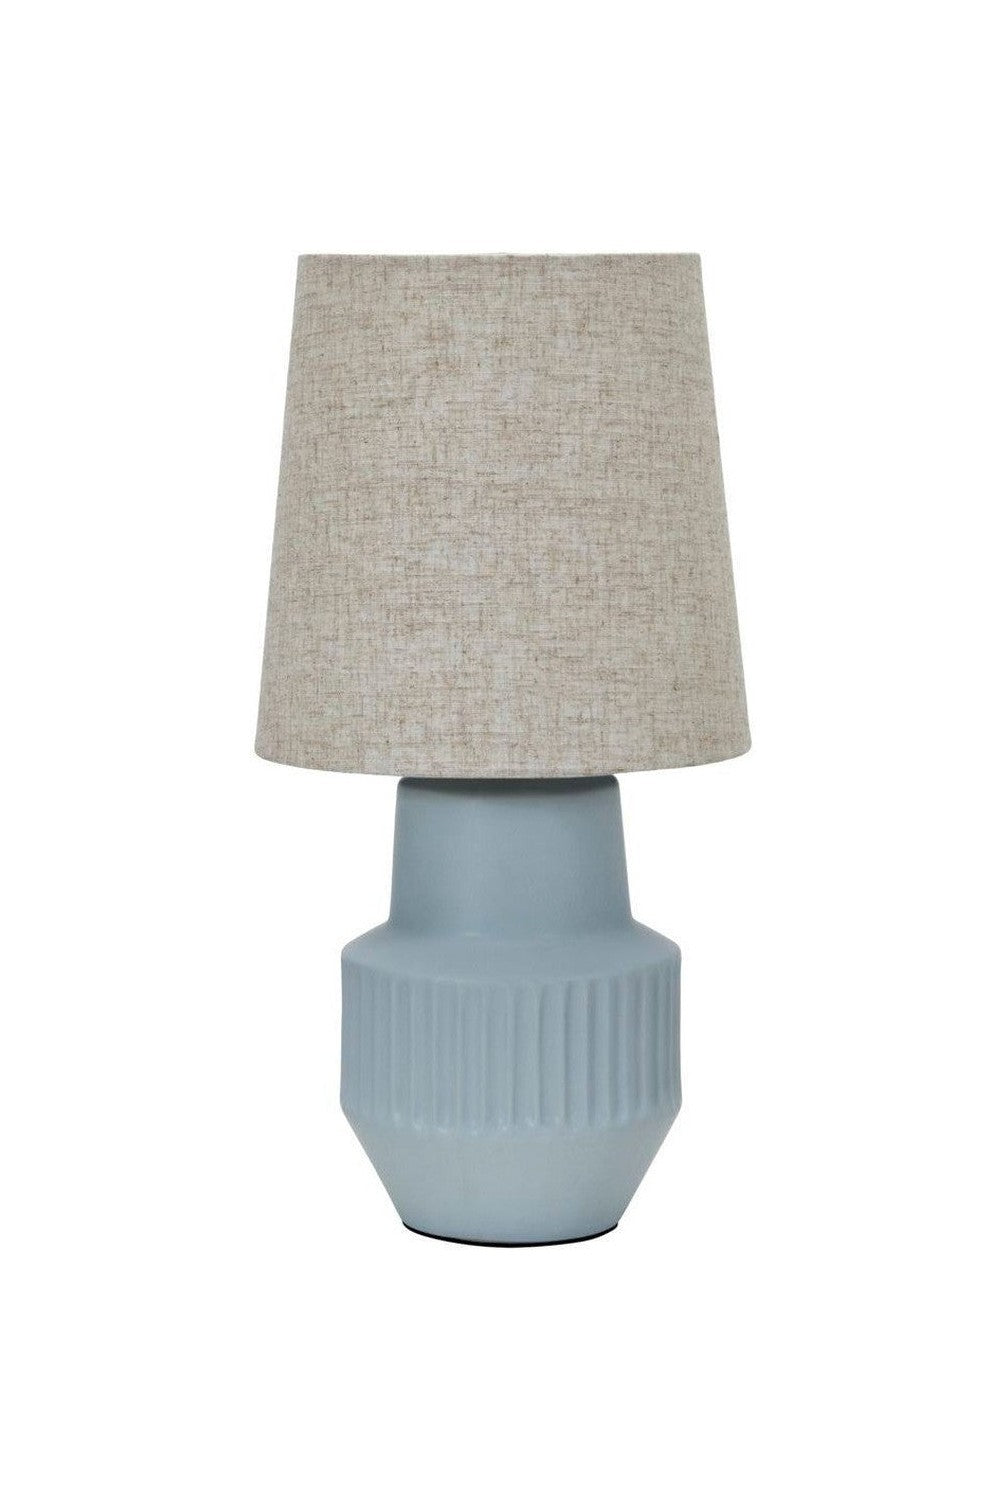 House Doctor Table lamp, HDNoam, Light blue